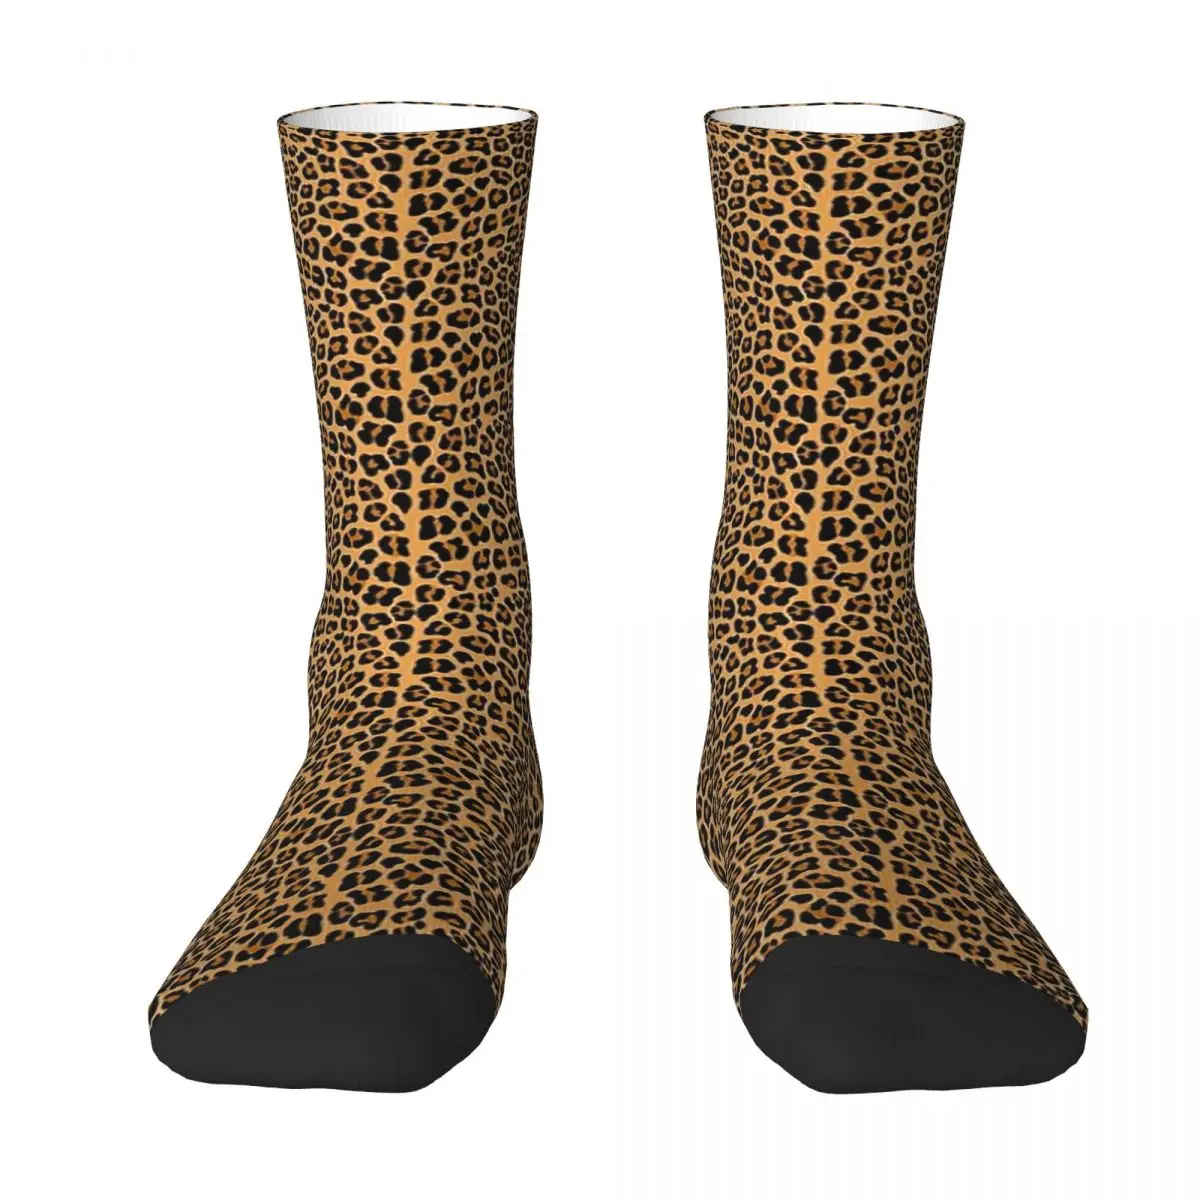 Leopard Print Adult Socks Unisex socks,men Socks women Socks hip hop socks number 3d print women socks for unisex basketball socks cotton blend women skateboard high quality sox meias